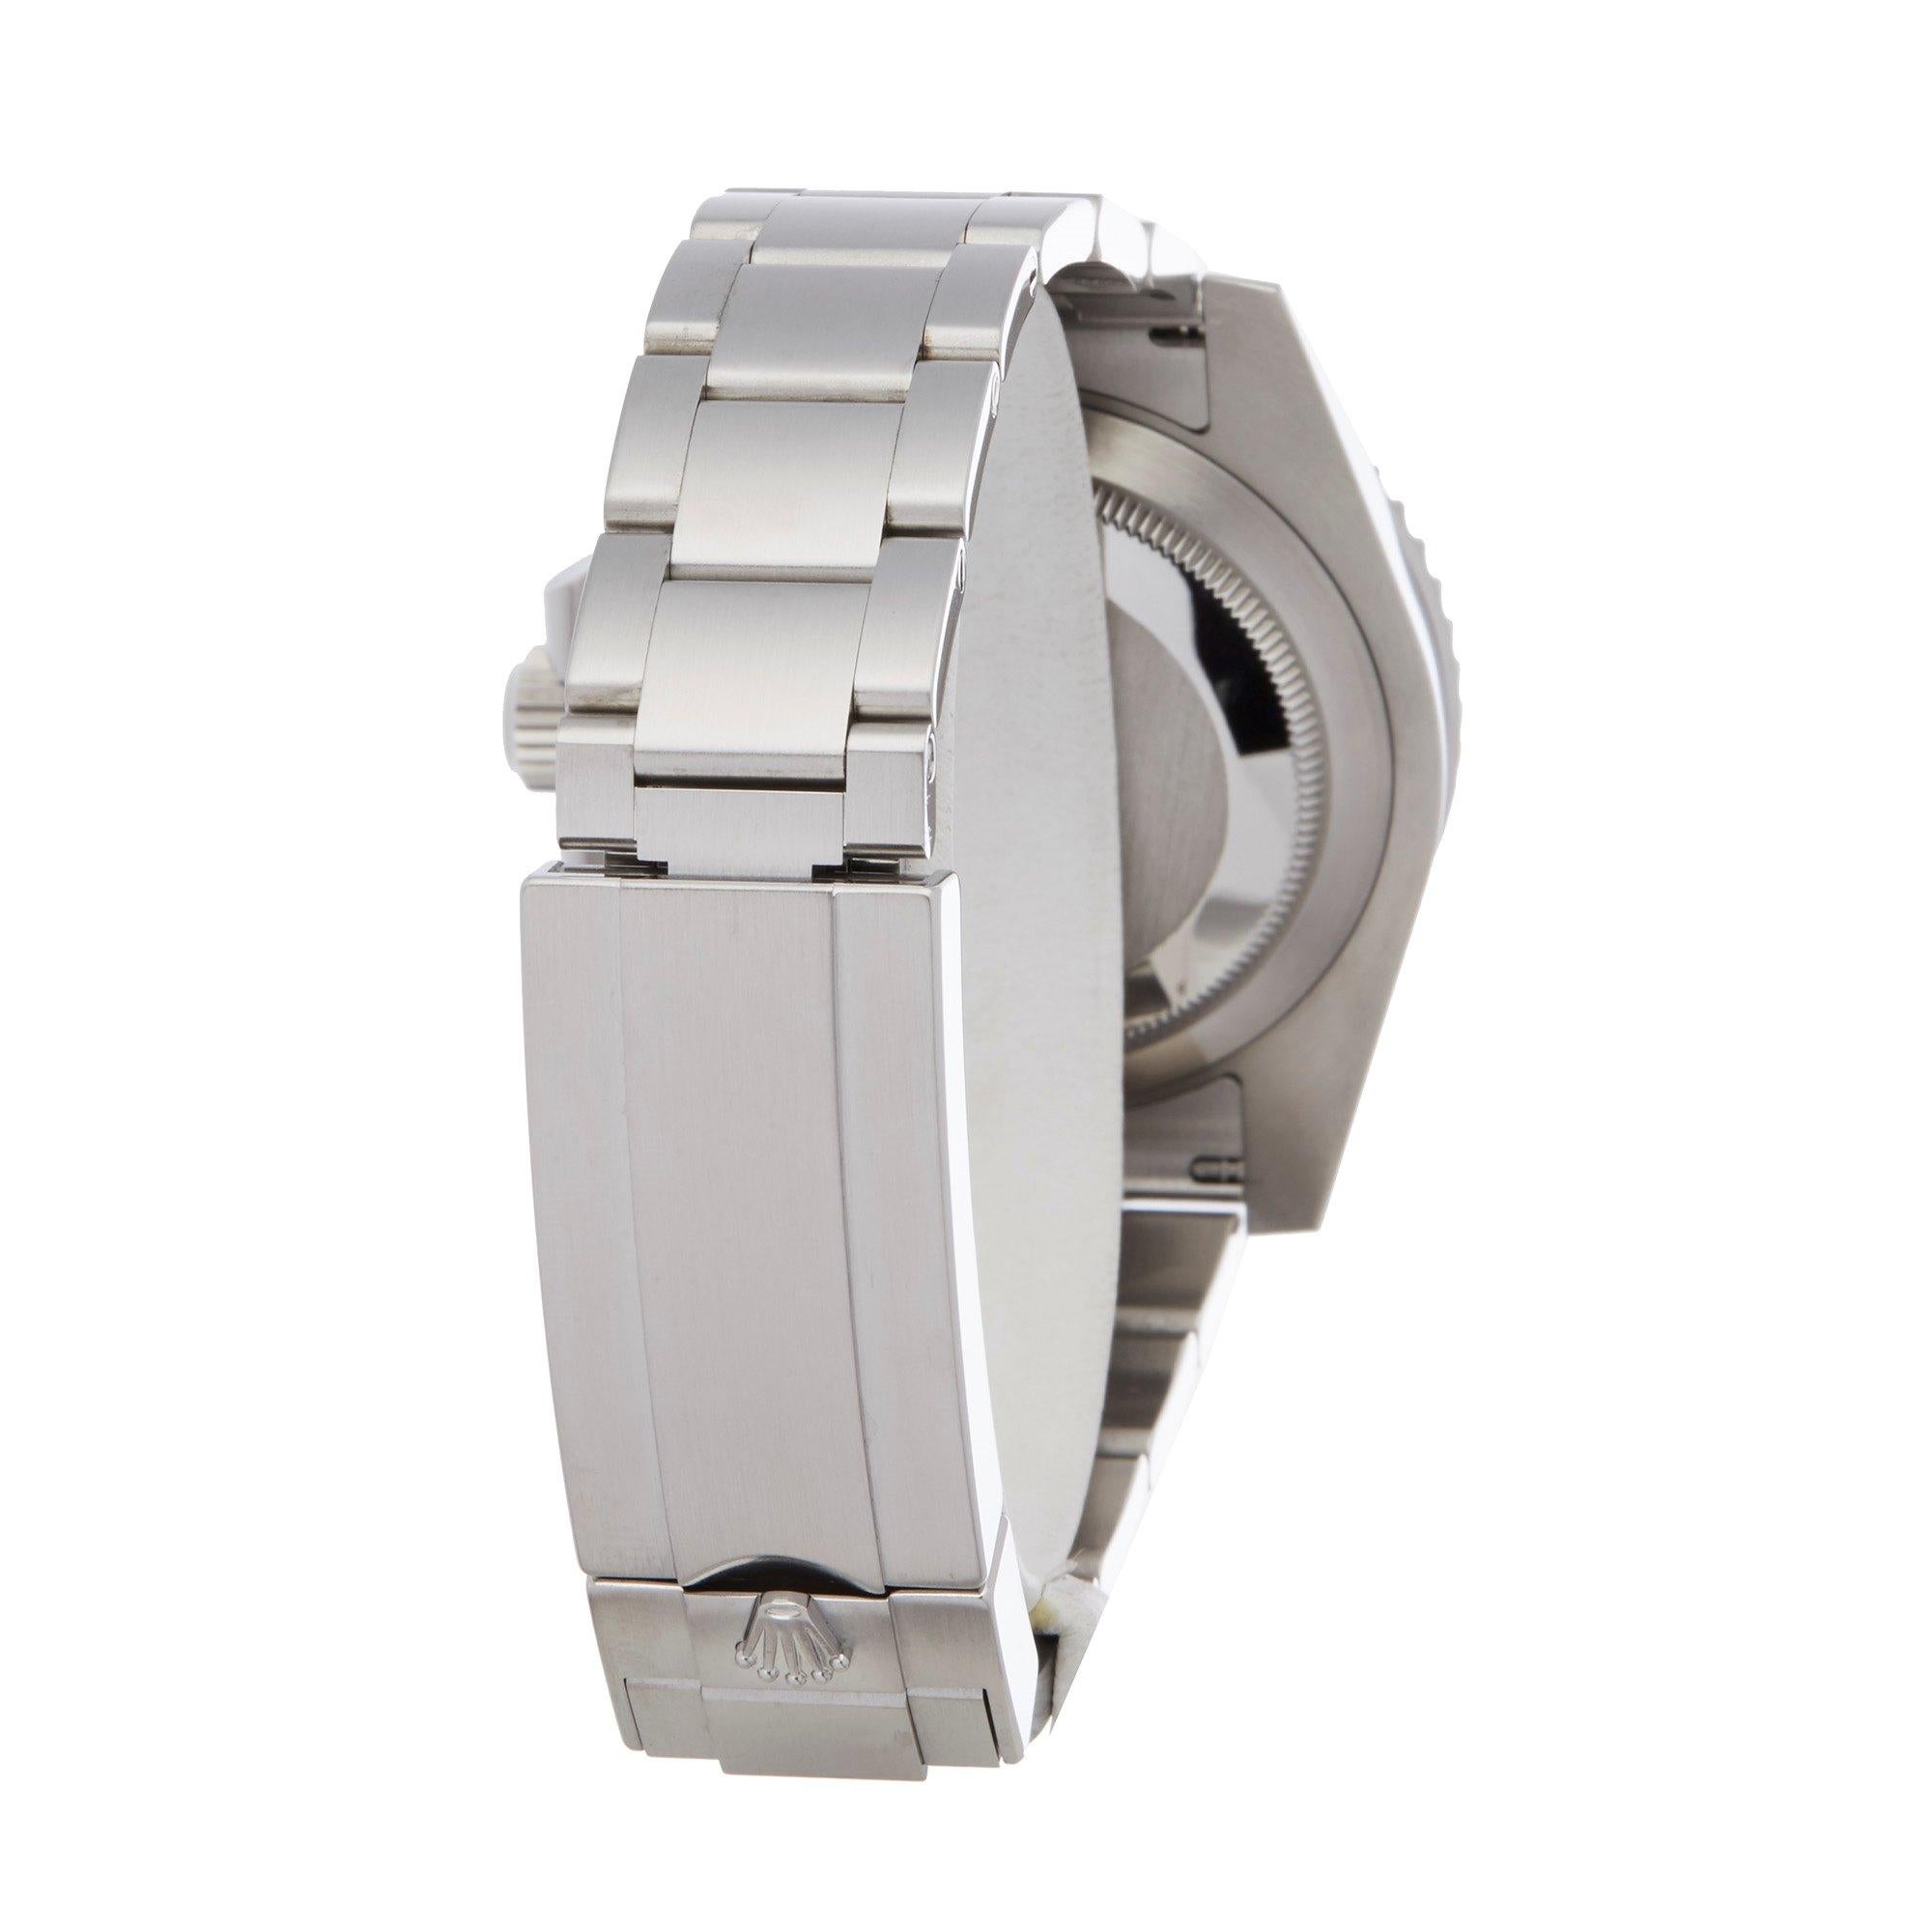 Rolex Submariner Non-Date 114060 Men's Stainless Steel Watch 2